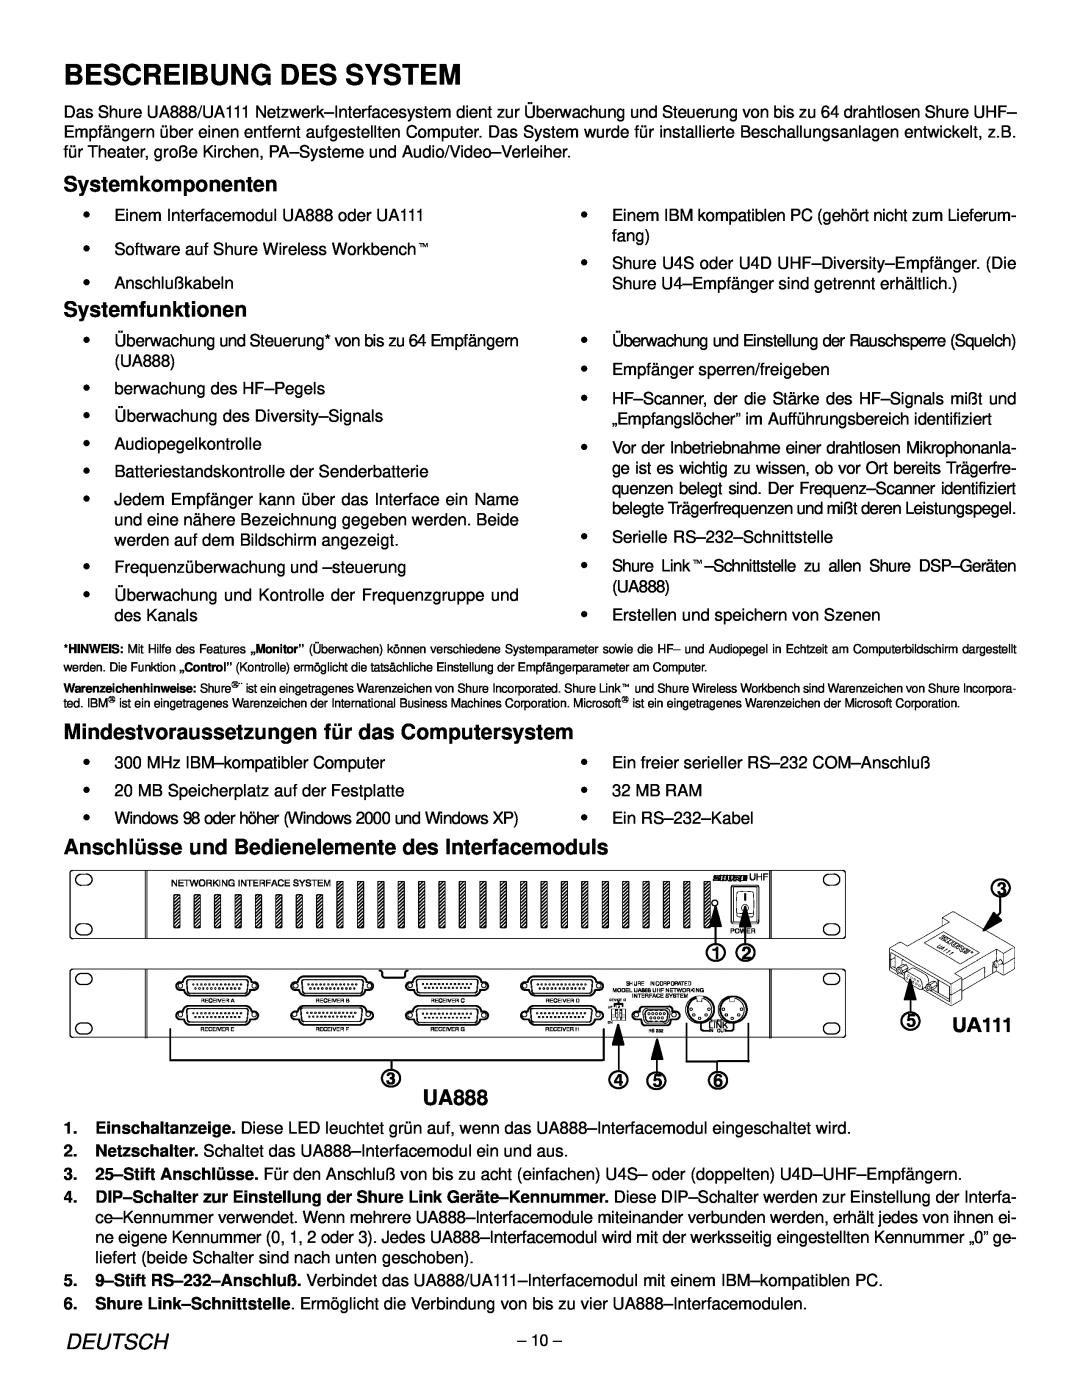 Shure UA888, UA111 manual Systemkomponenten, Systemfunktionen, Mindestvoraussetzungen für das Computersystem, Deutsch 